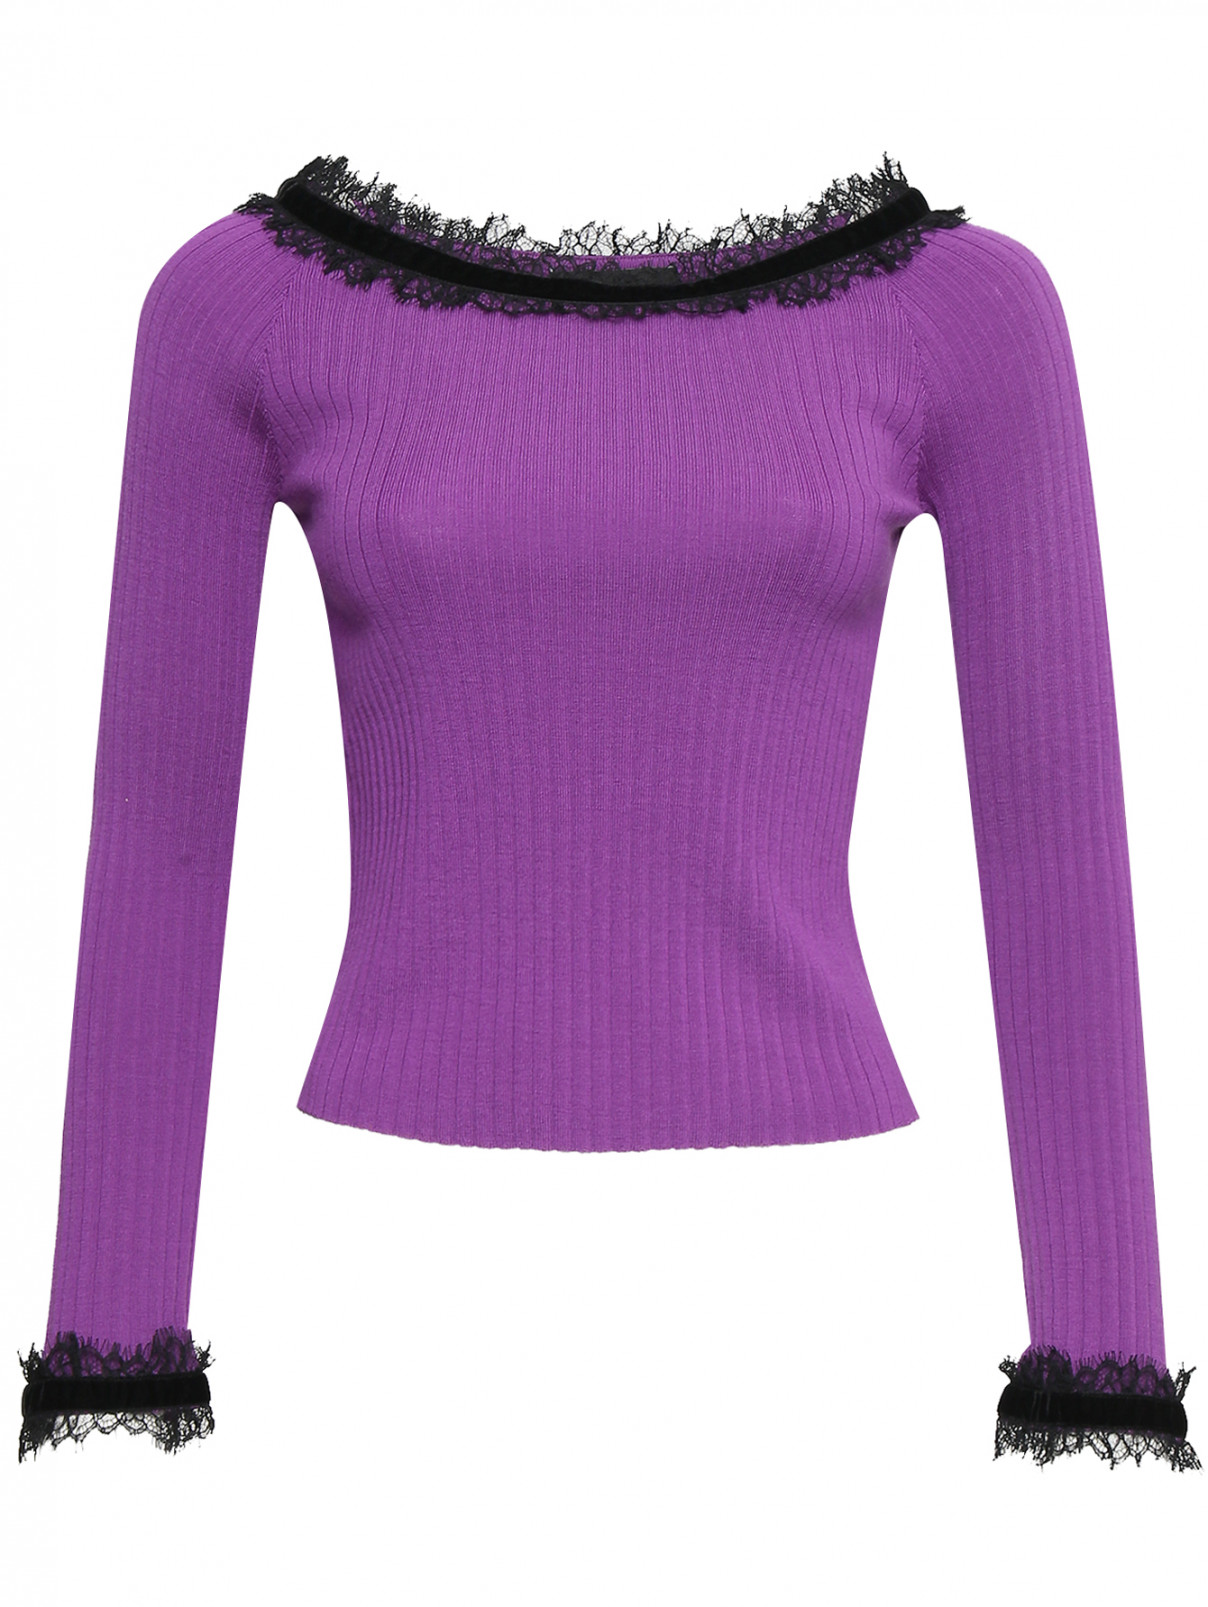 Джемпер из шерсти с аппликацией BOUTIQUE MOSCHINO  –  Общий вид  – Цвет:  Фиолетовый